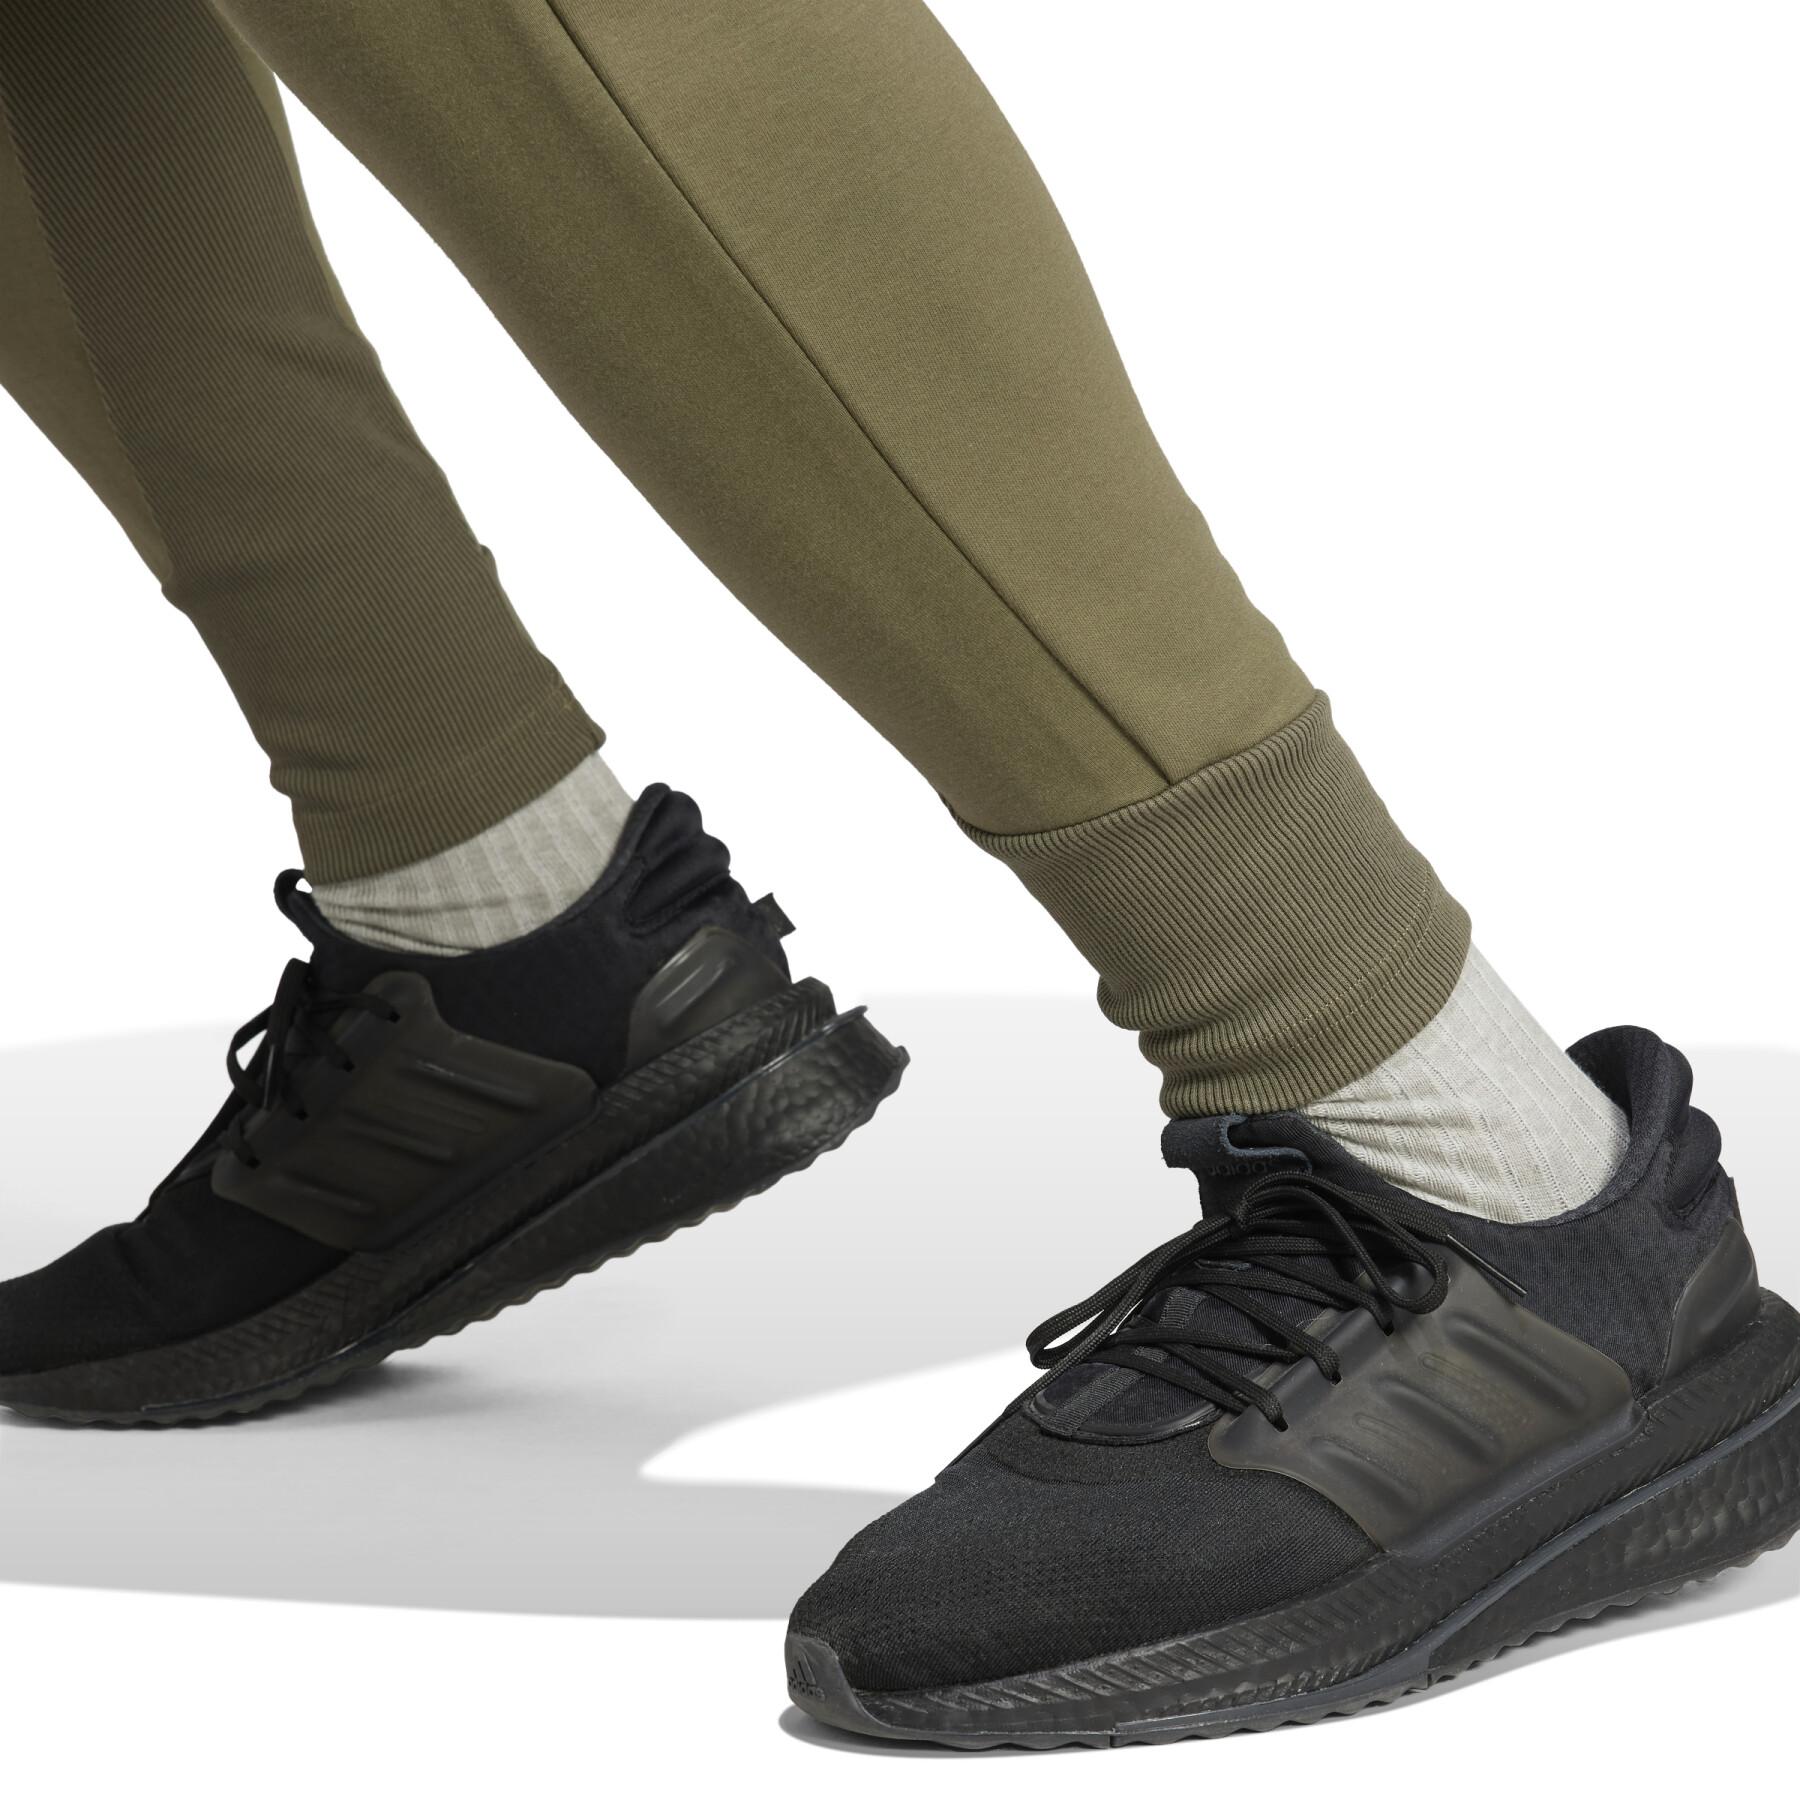 Pantaloni sportivi Adidas Z.N.E. Premium